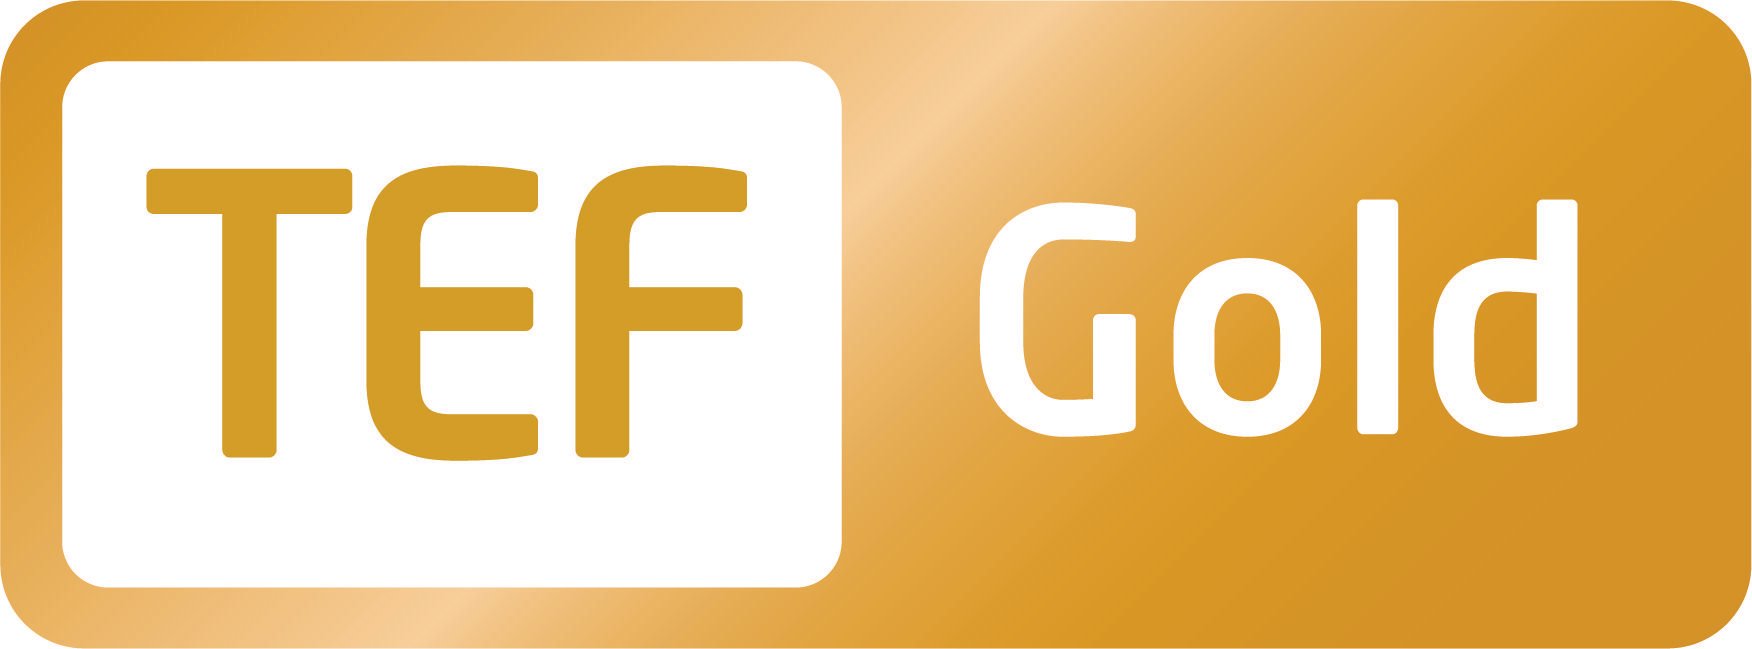 Google Gold Logo - TEF Gold logo CMYK - Sparsholt College Hampshire